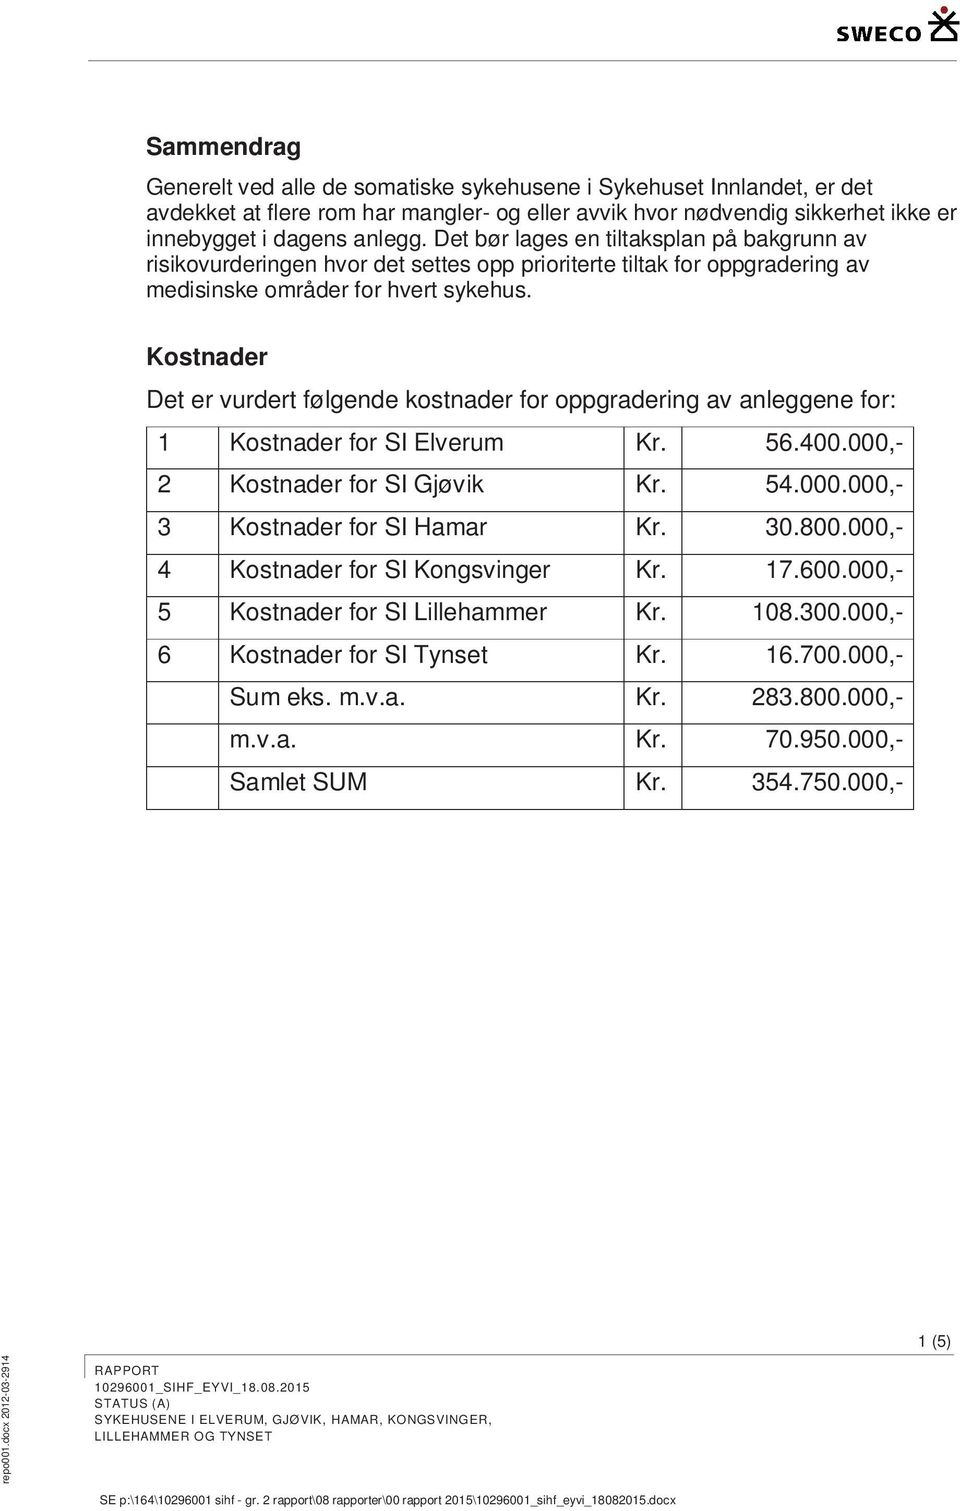 Kostnader Det er vurdert følgende kostnader for oppgradering av anleggene for: 1 Kostnader for SI Elverum Kr. 56.400.000,- 2 Kostnader for SI Gjøvik Kr. 54.000.000,- 3 Kostnader for SI Hamar Kr. 30.